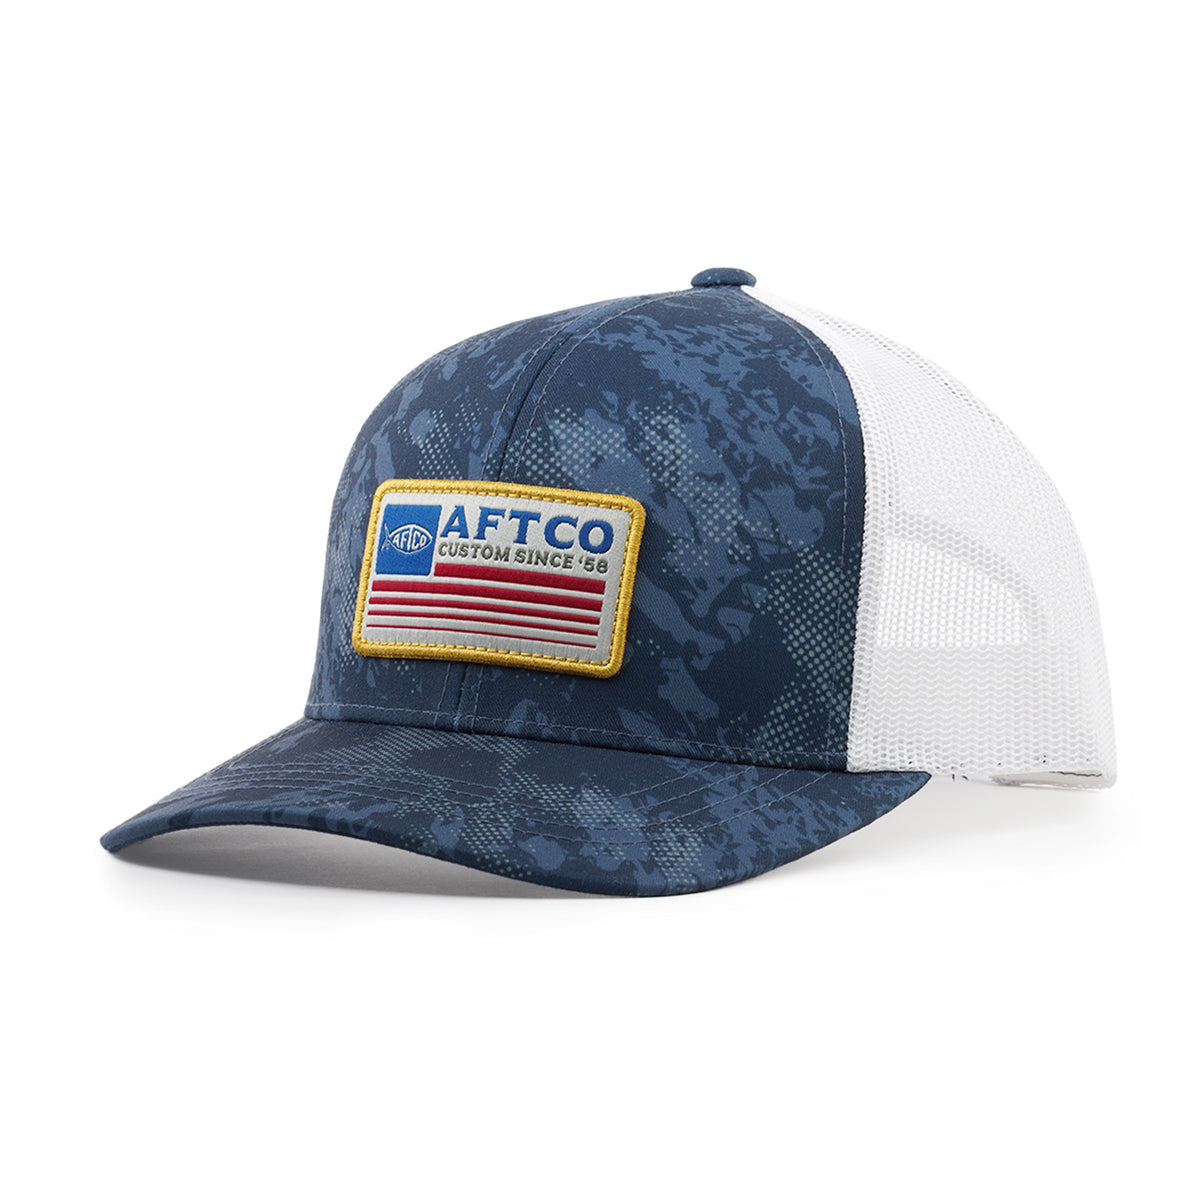 AFTCO Crossbar Trucker Hat